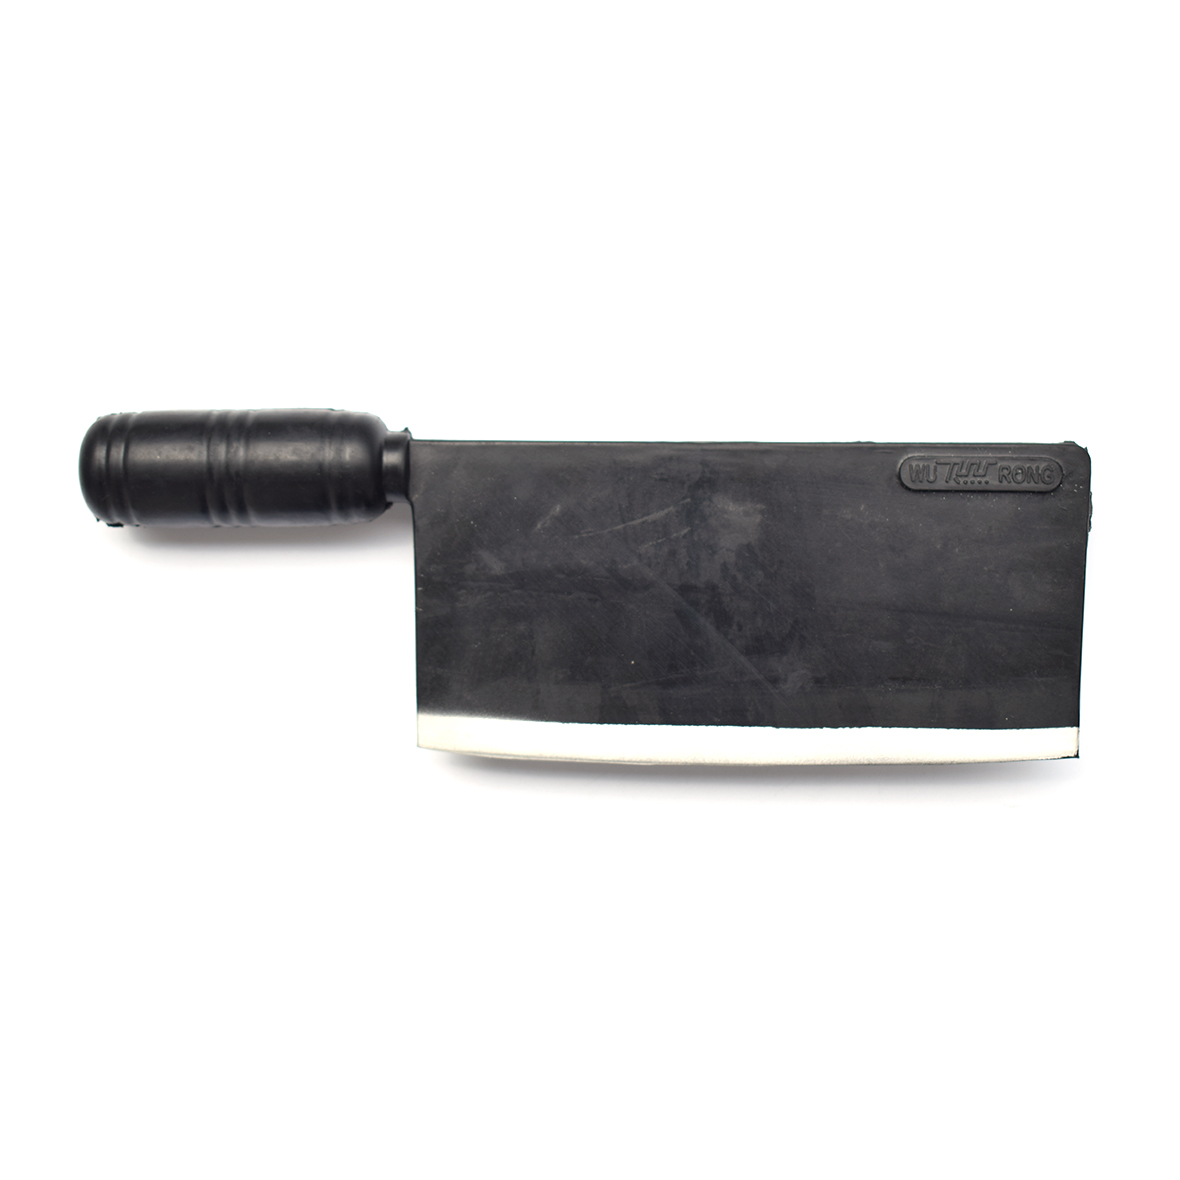 Rubber kitchen knife (white edge)